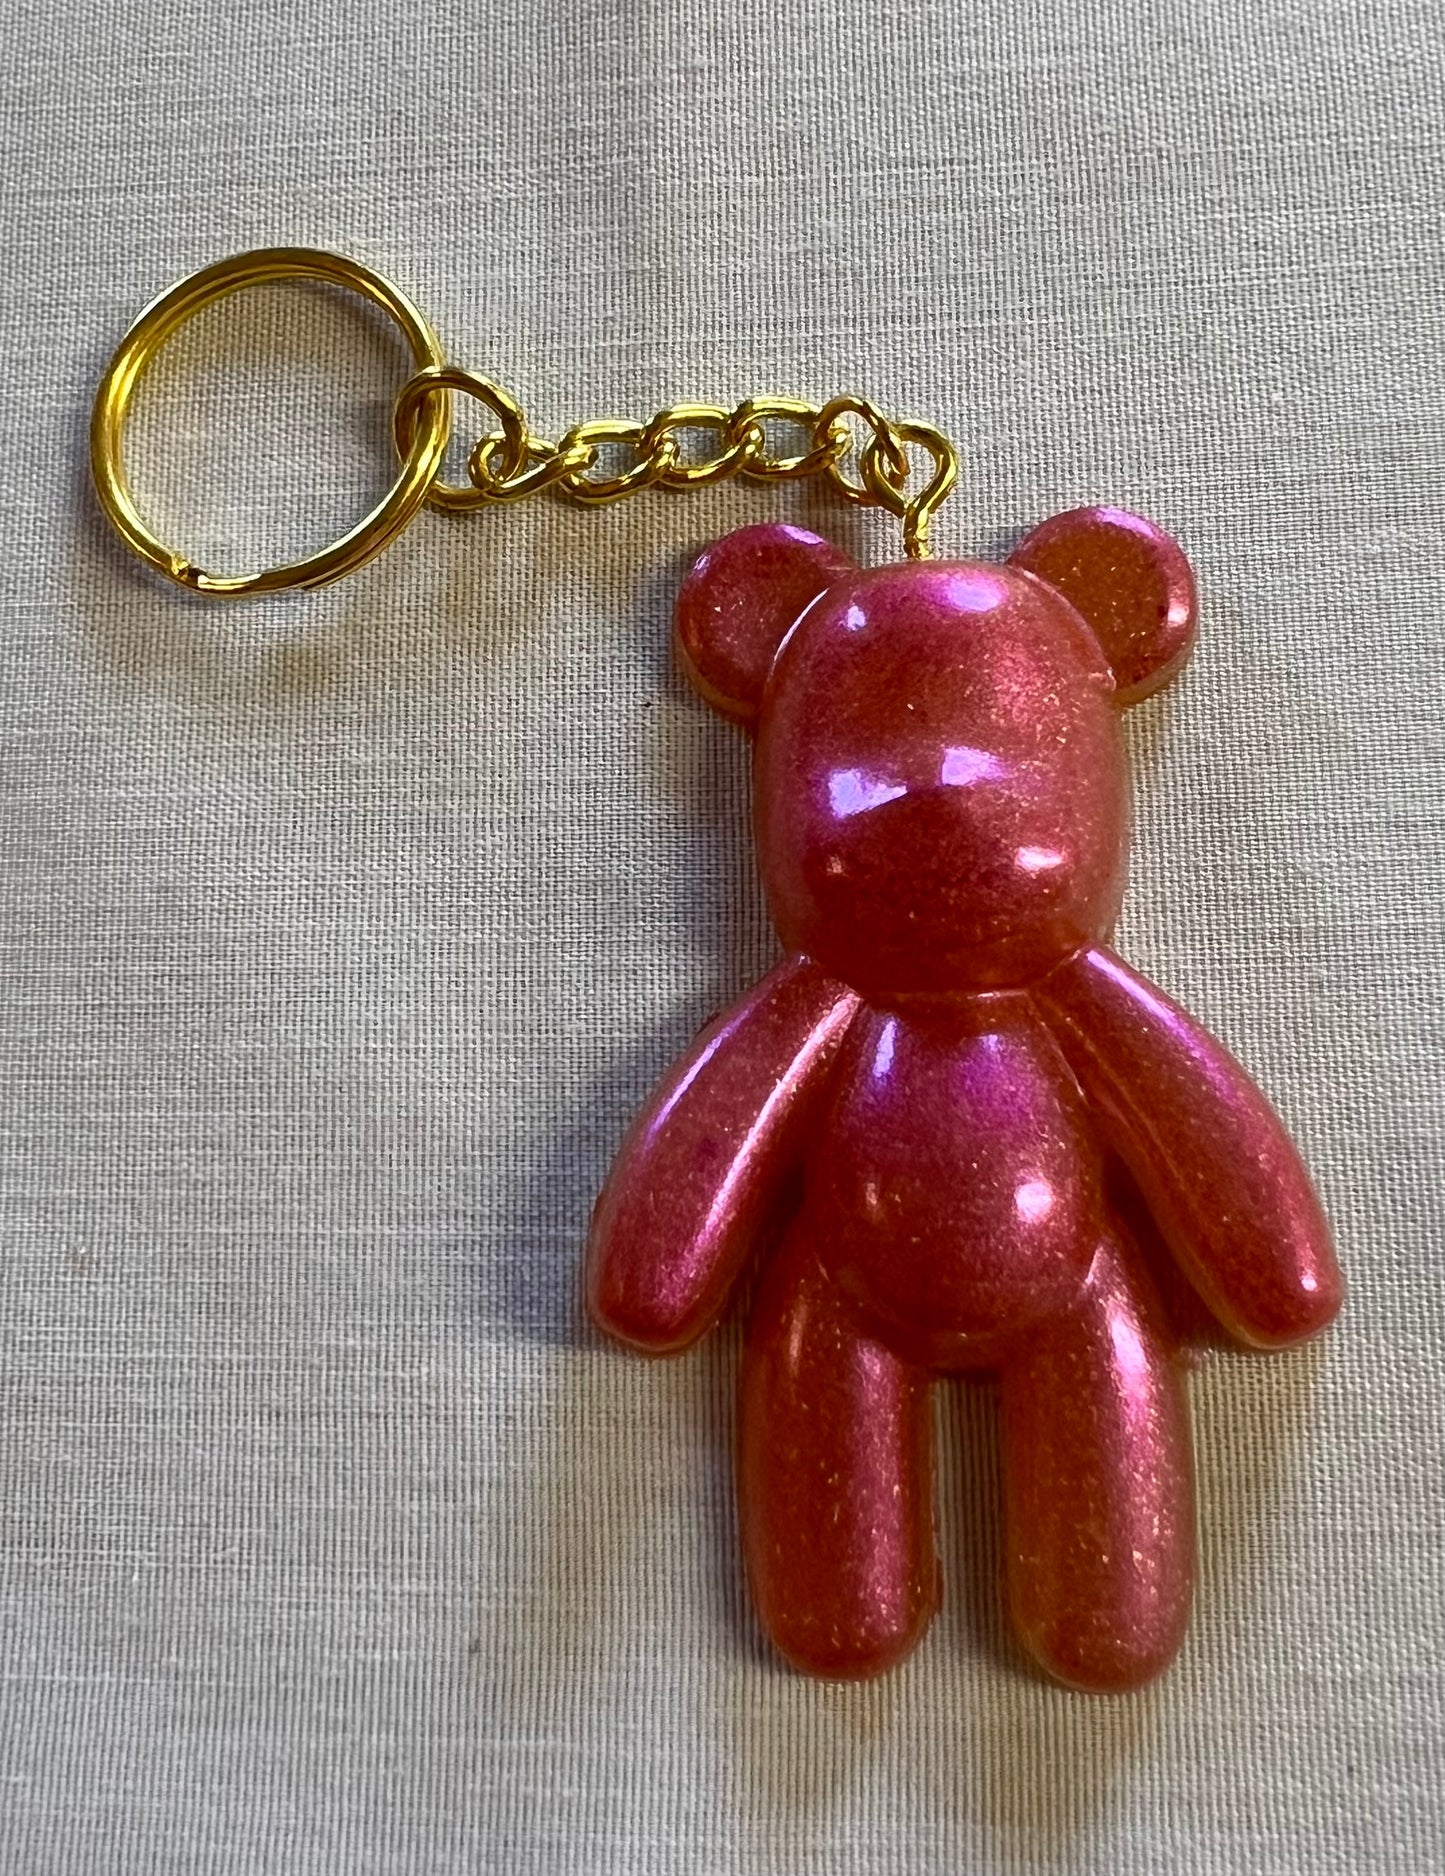 Big Bear Keychains